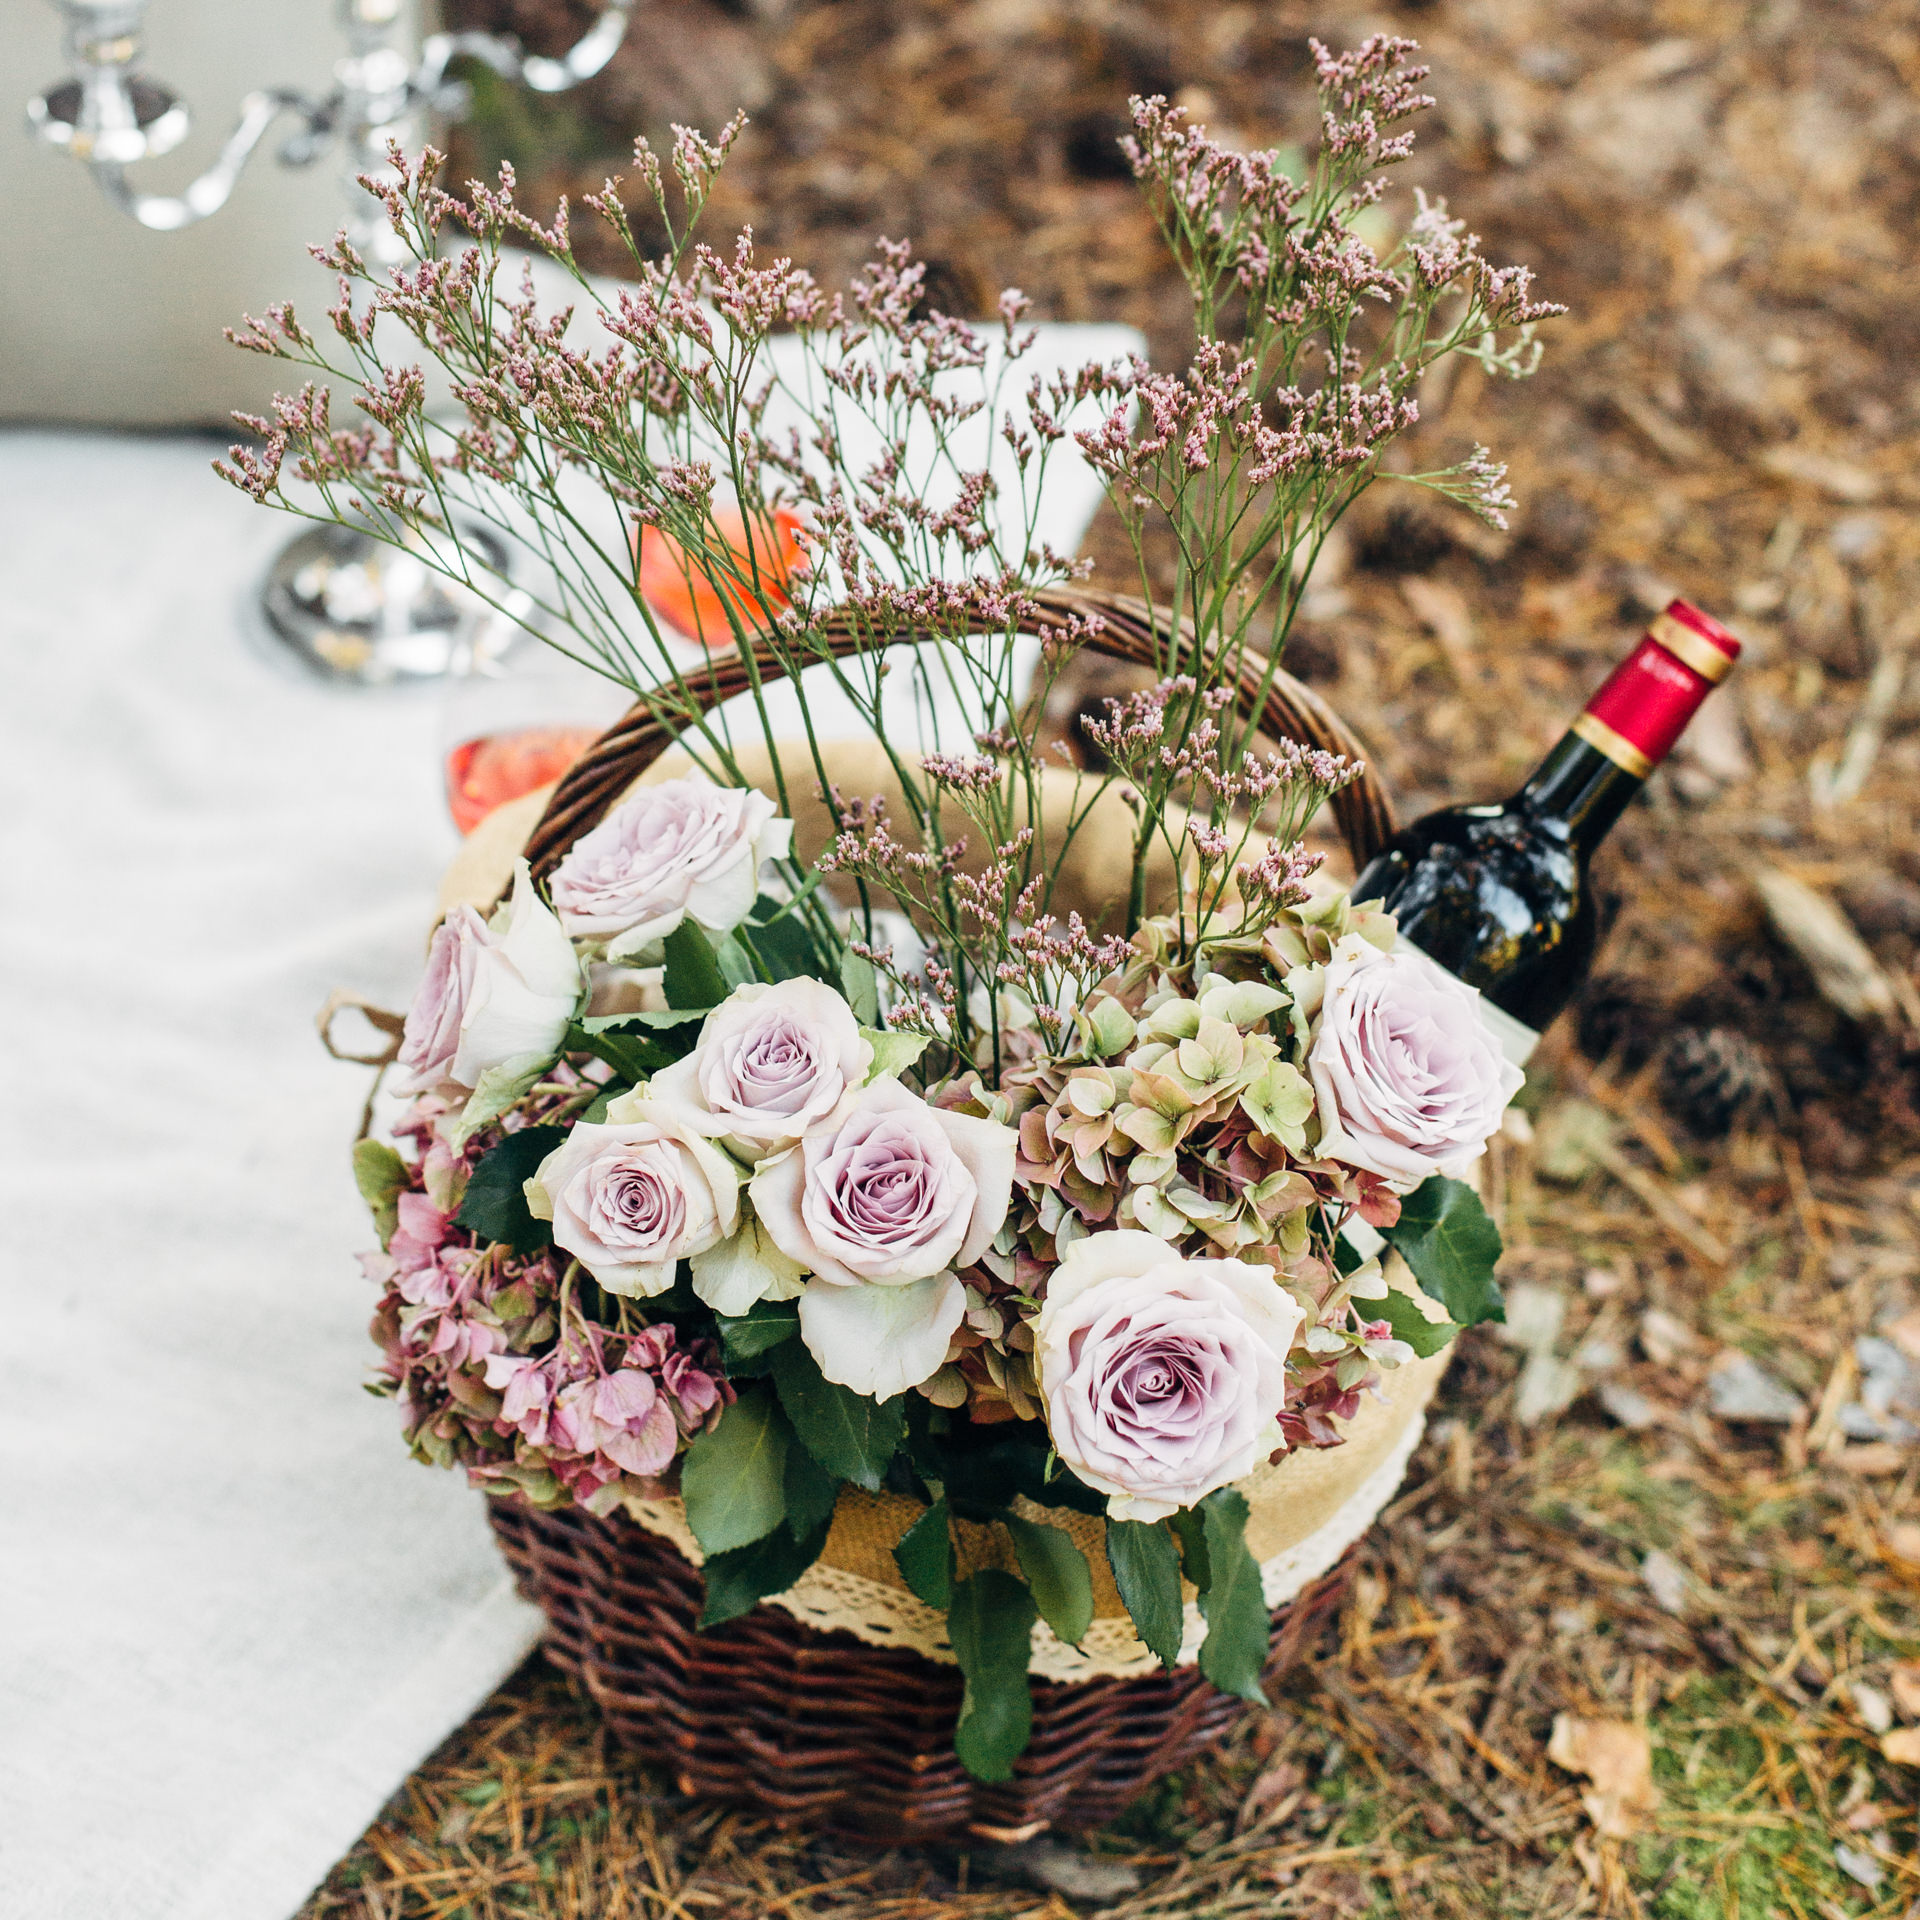 Picknickkorb mit Wein und Blumen